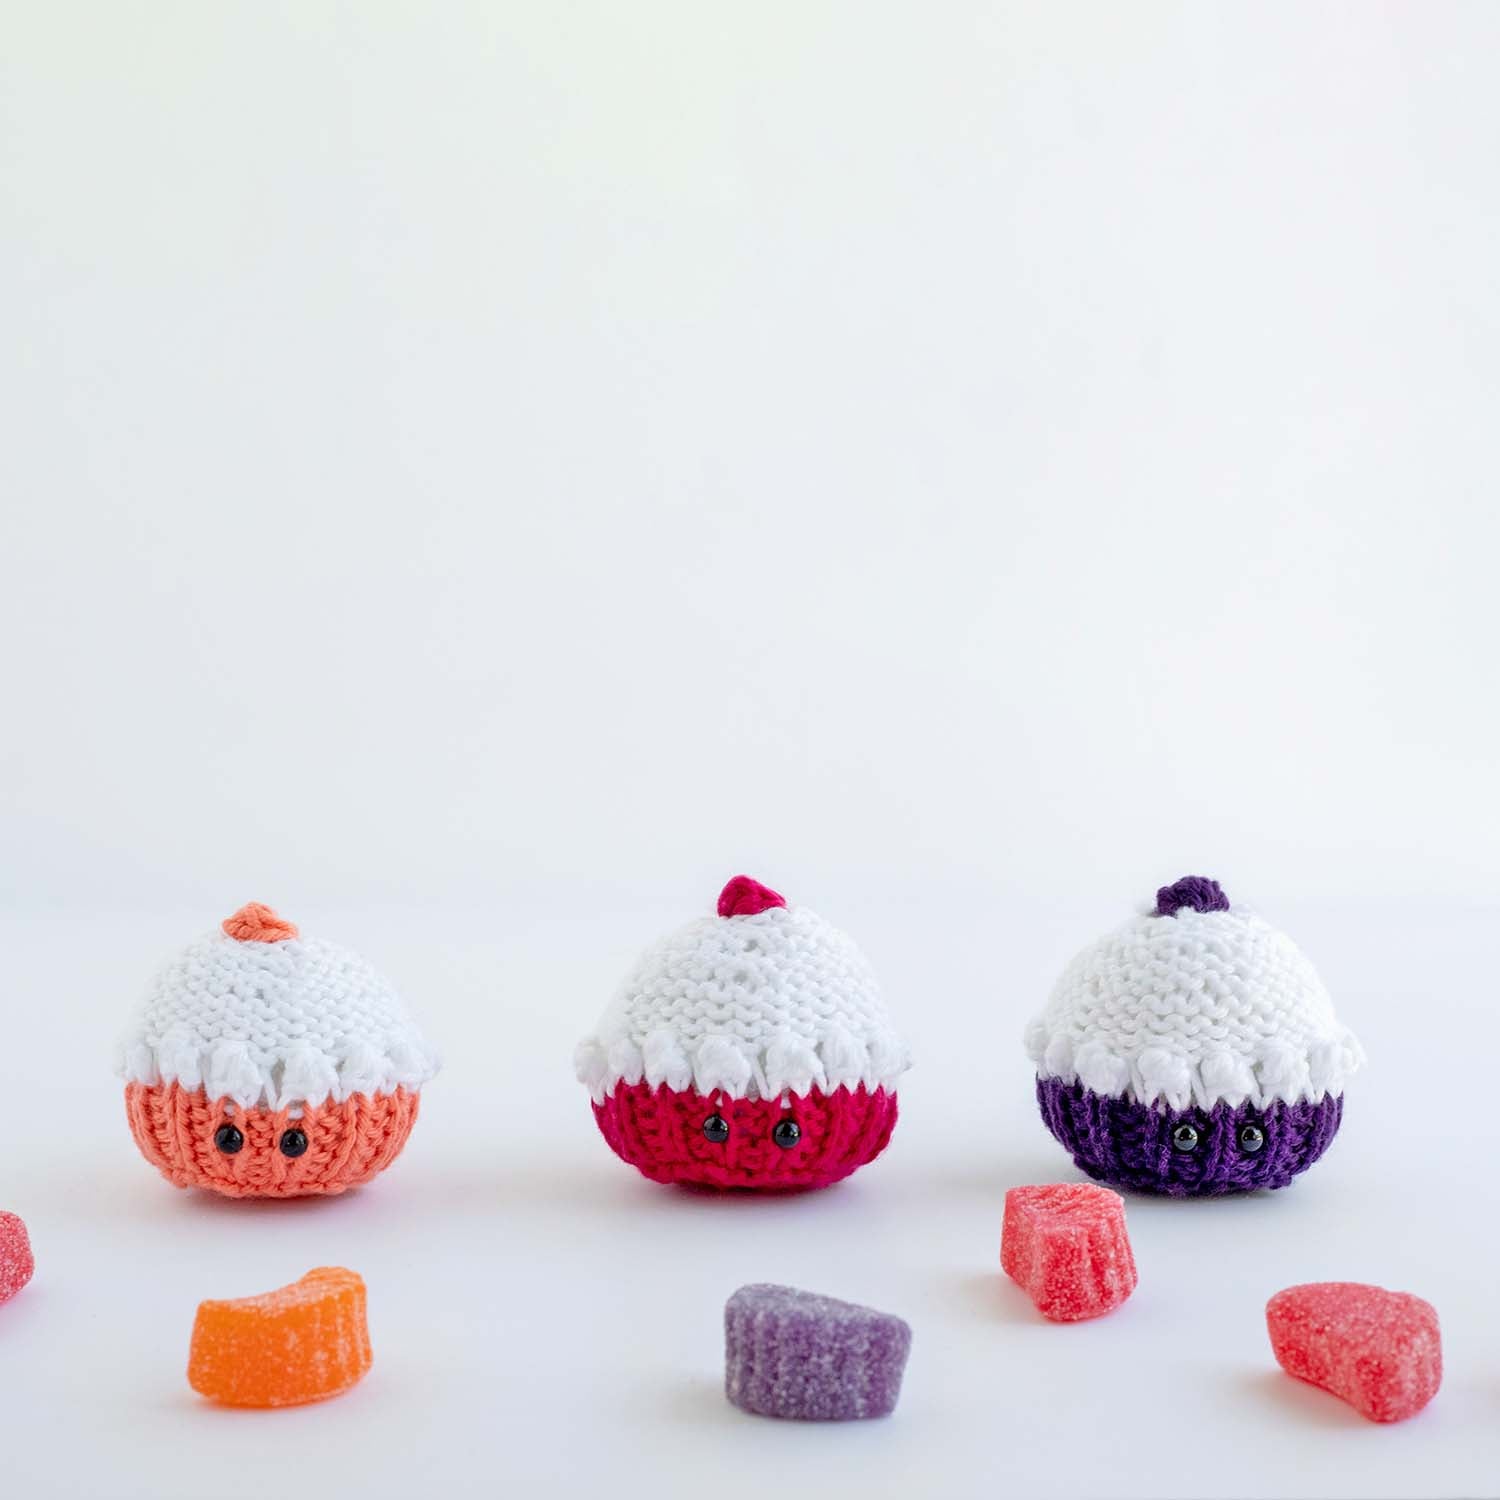 Mini Cupcake softie knitting pattern - PDF